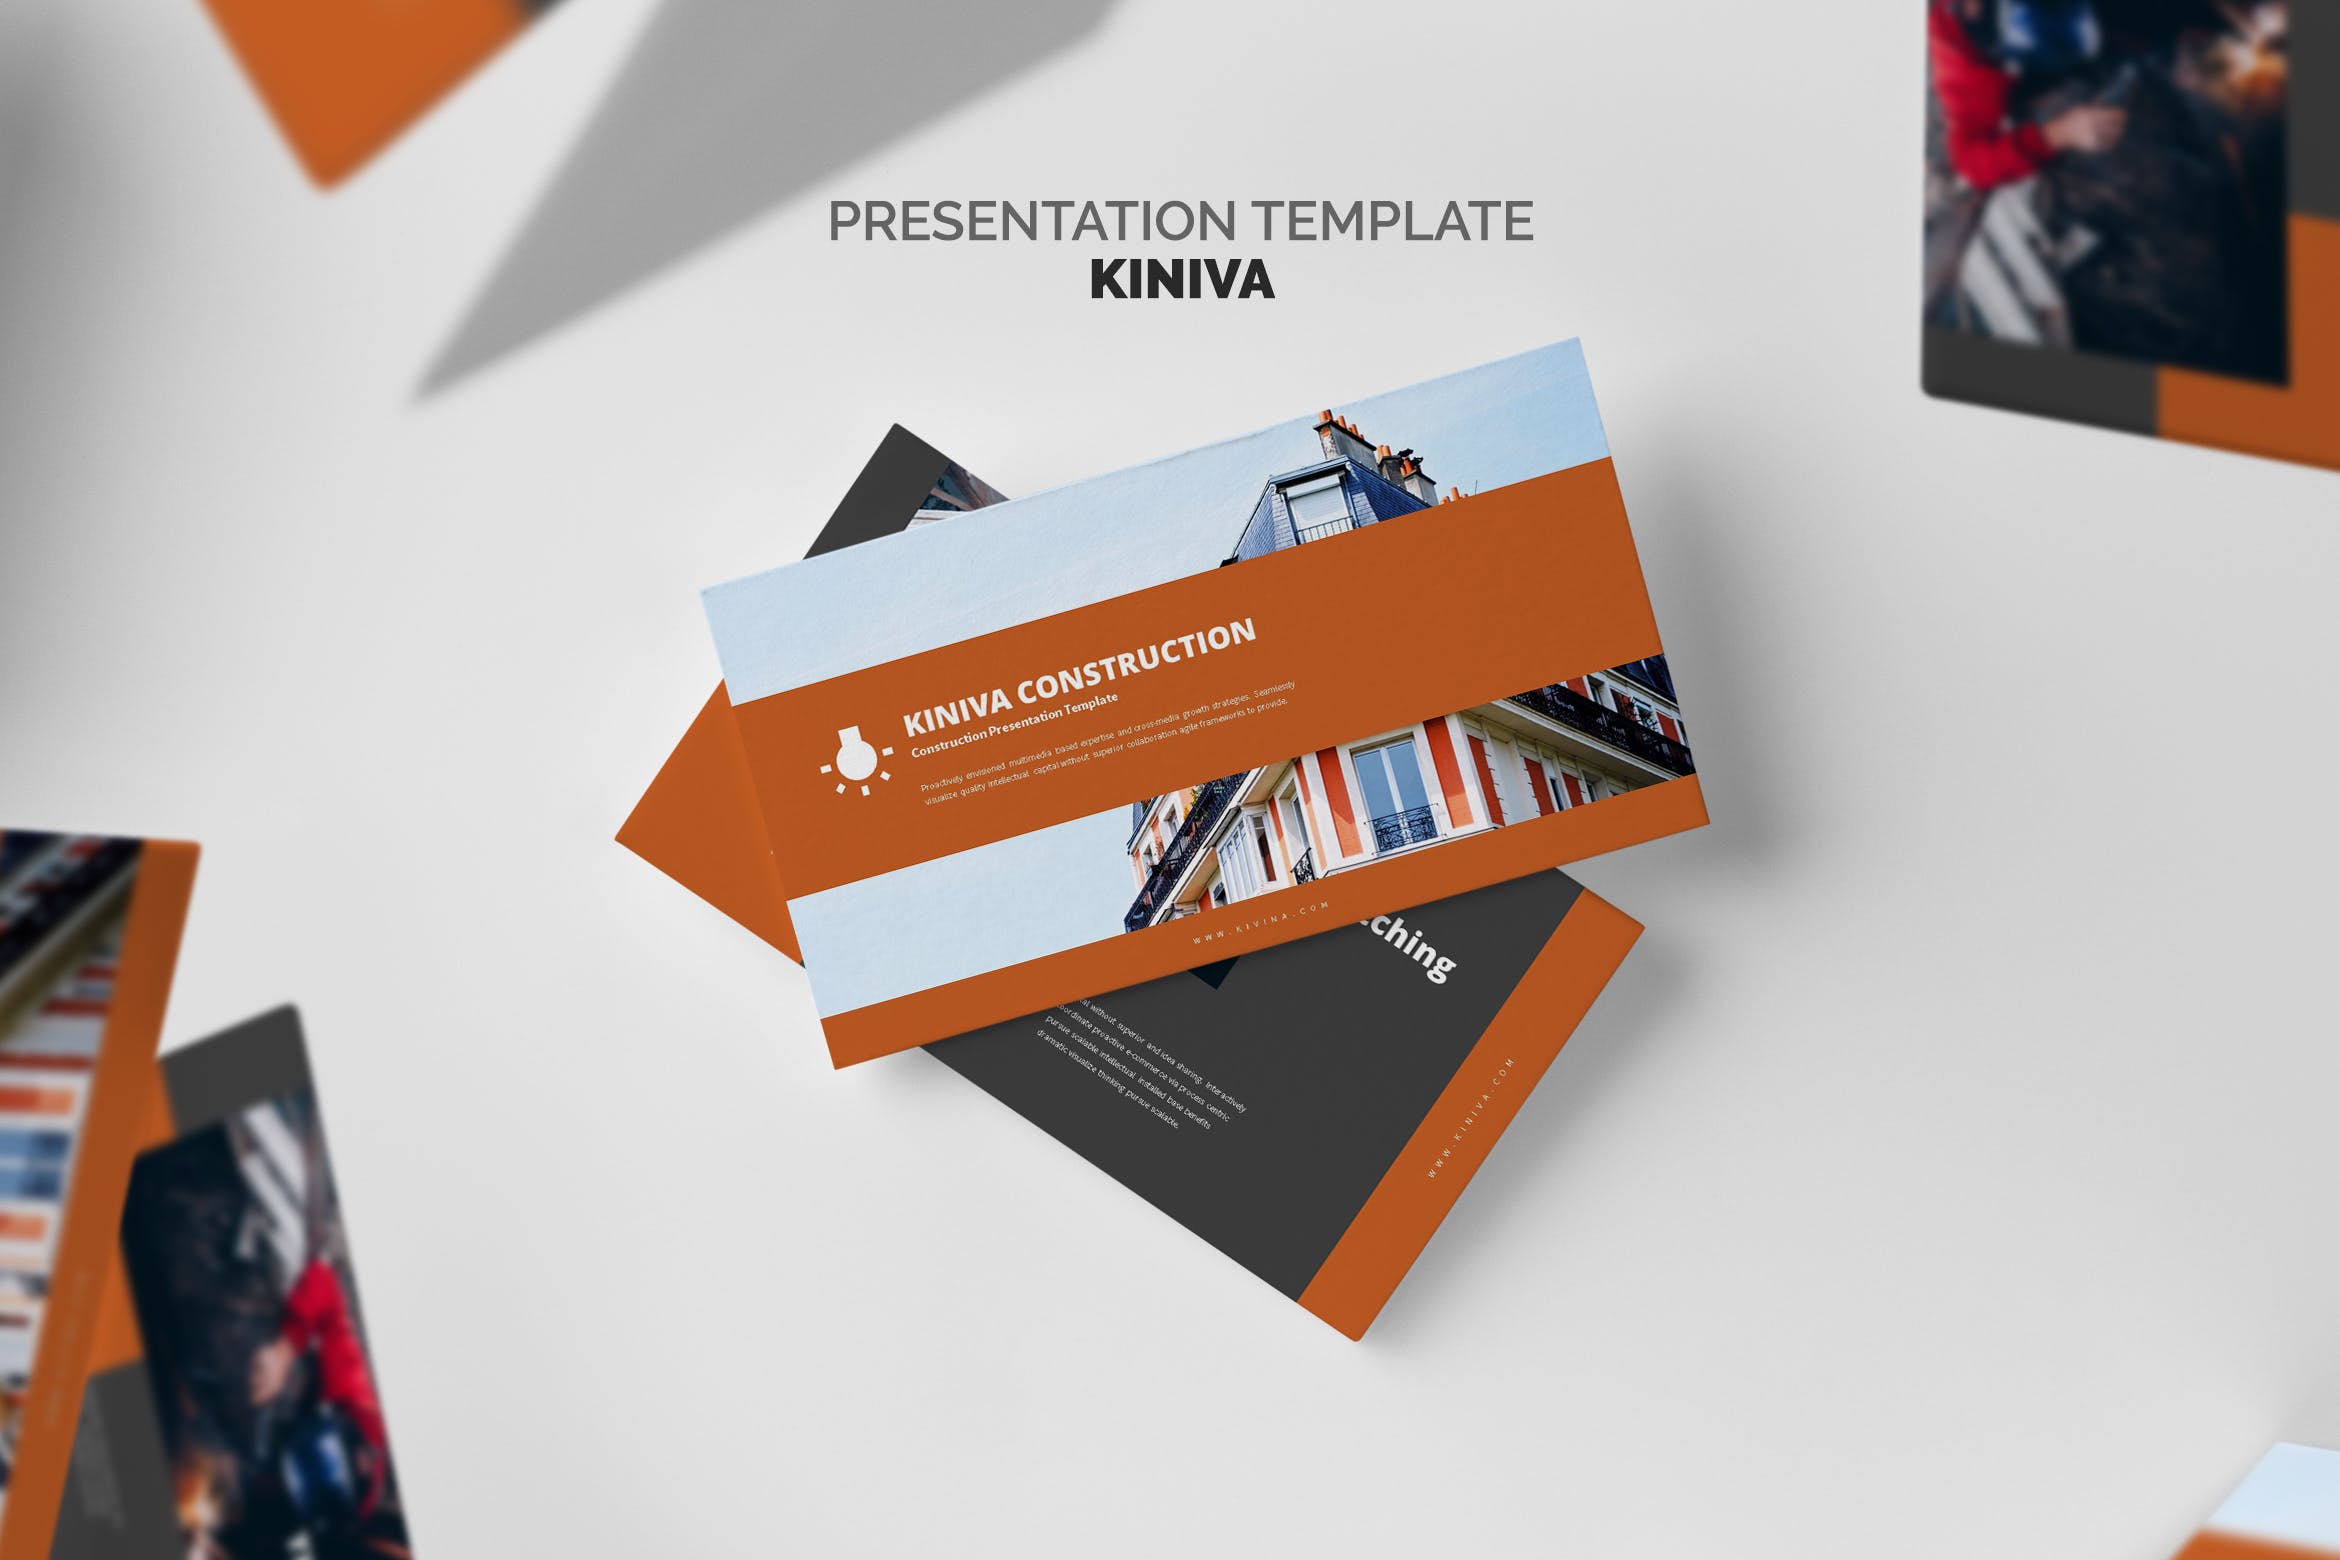 建筑与工程企业&项目介绍素材库精选PPT模板 Kiniva : Construction & Engineering Powerpoint插图